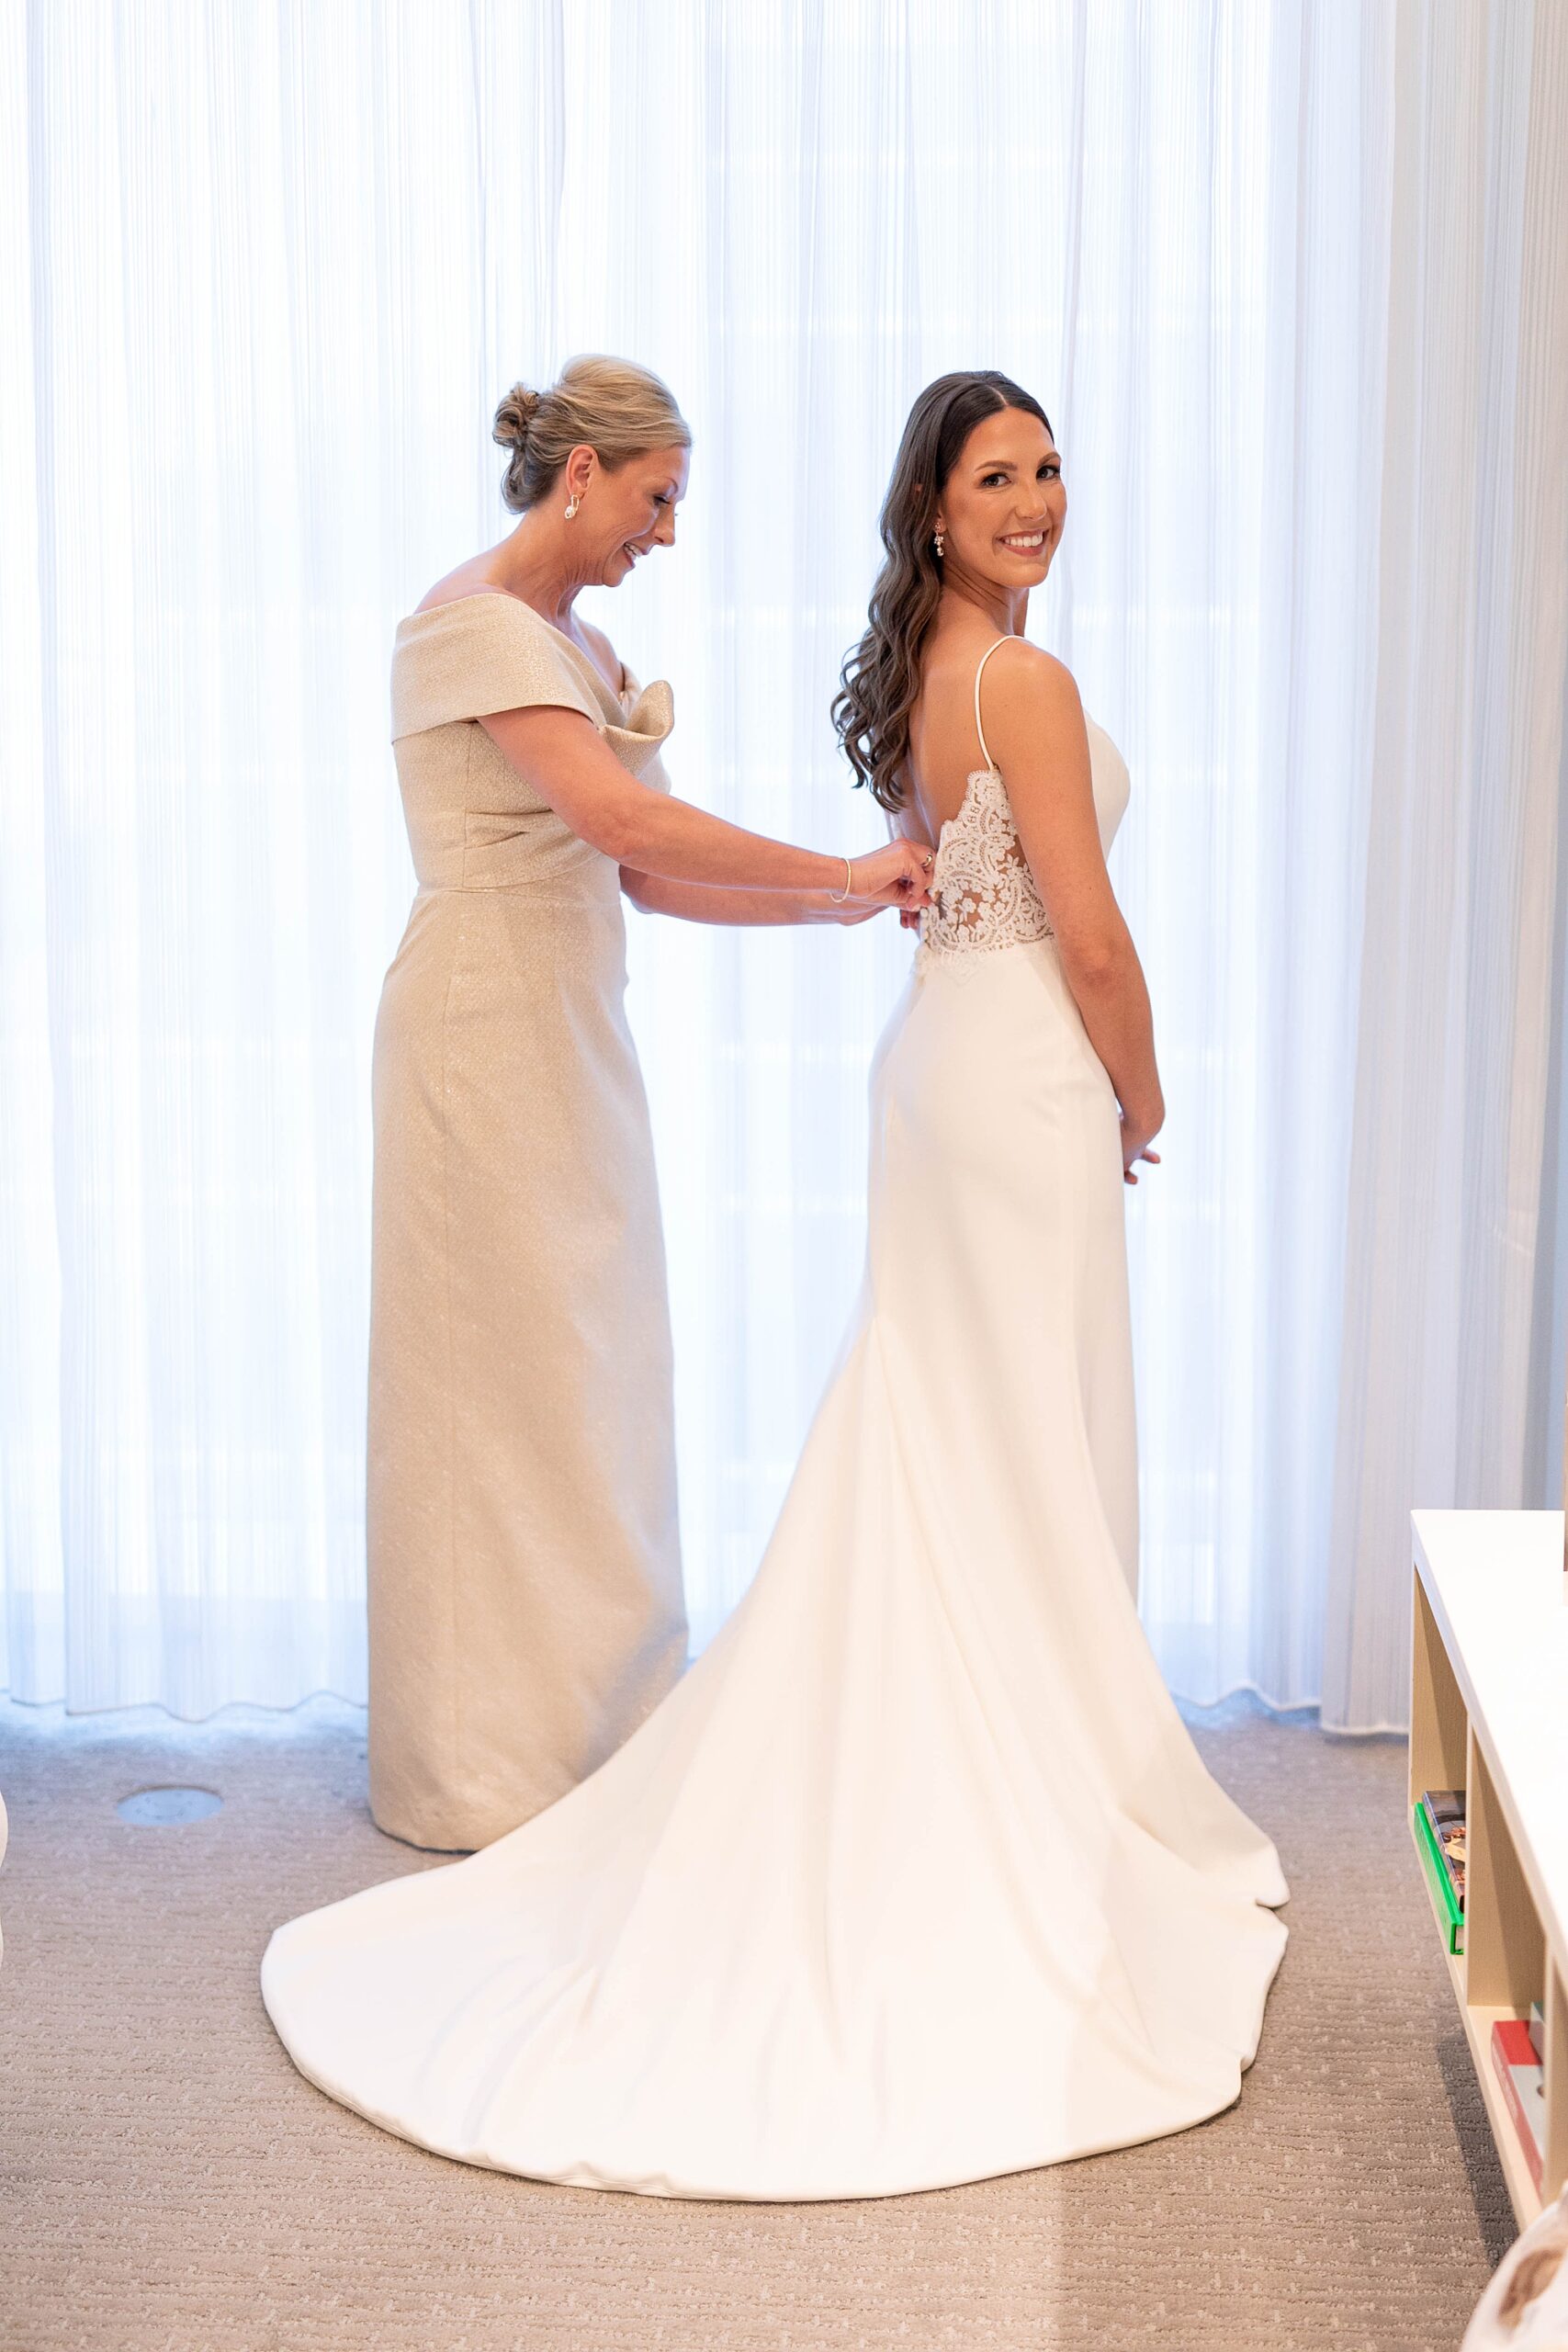 mother helps bride get into wedding dress in Dallas hotel 